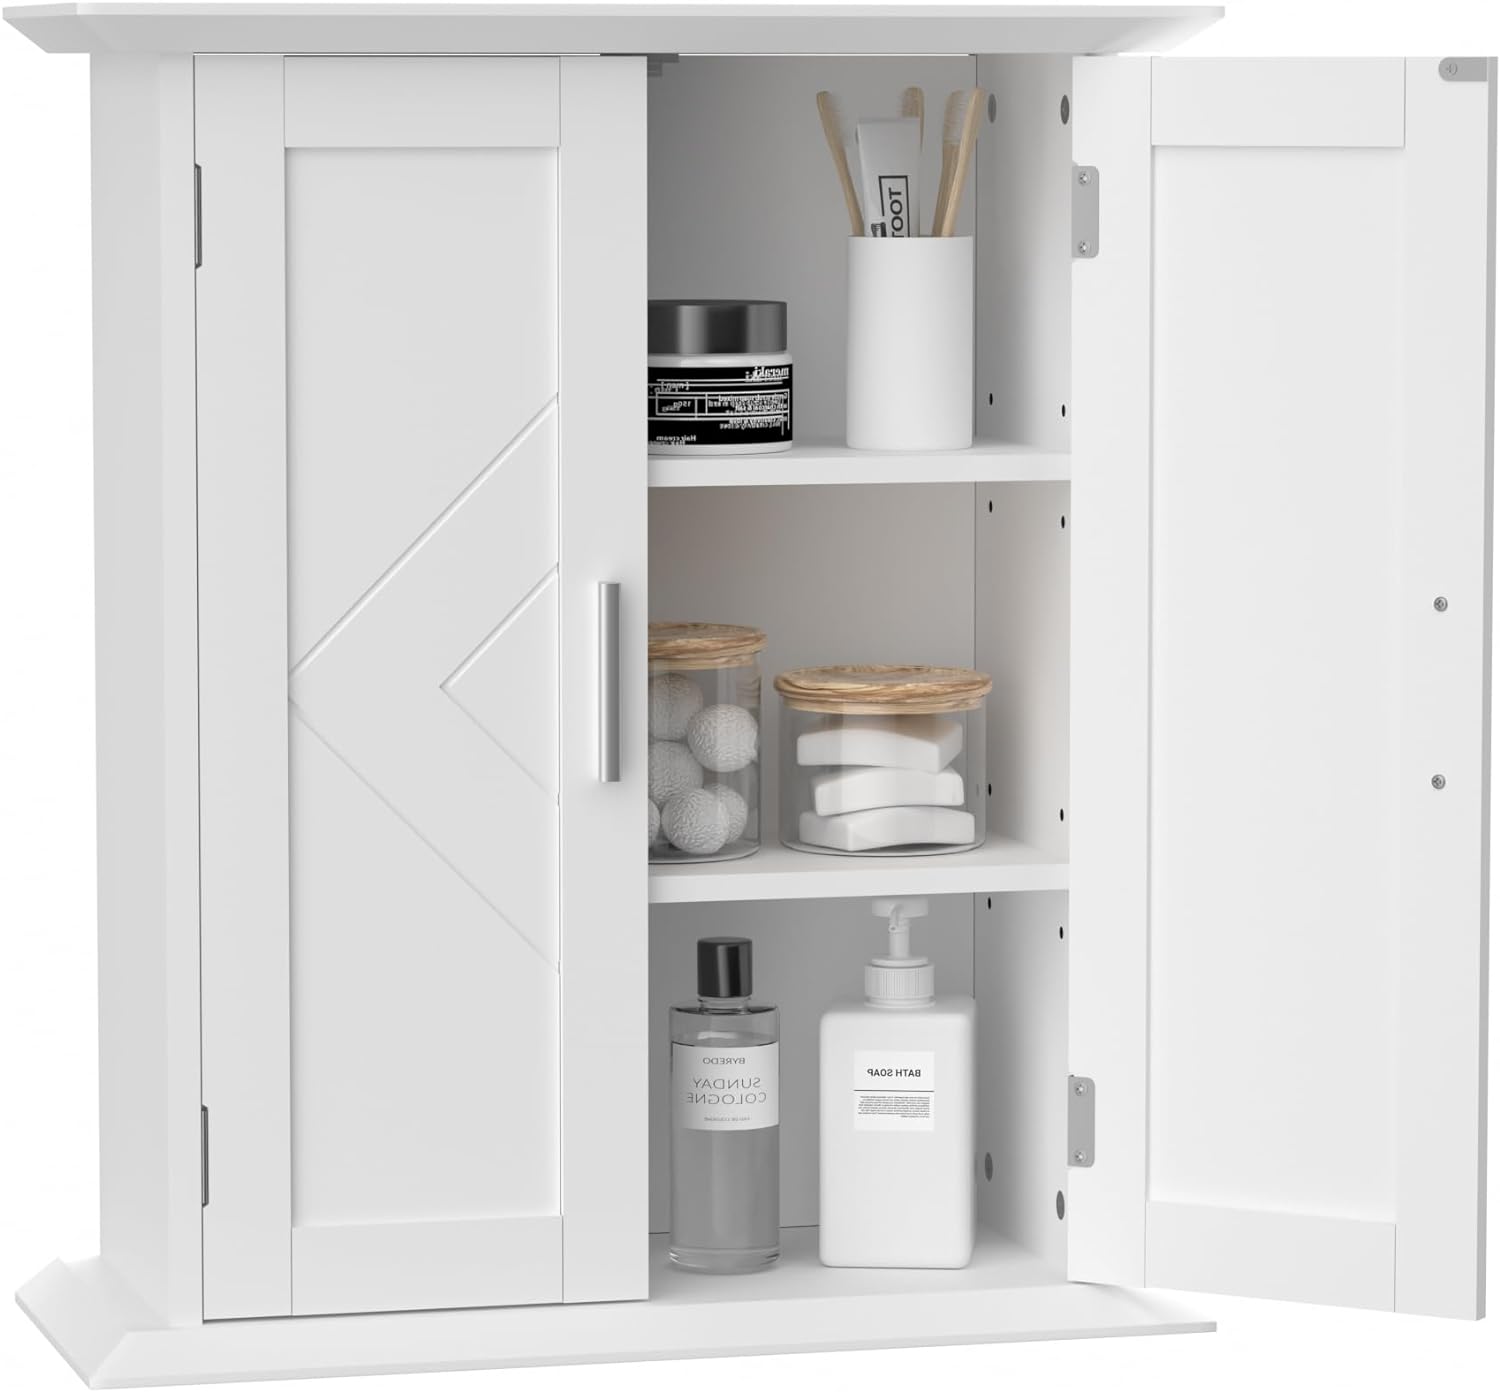 VECELO Bathroom Floor Cabinet Freestanding Wooden Storage Organizer